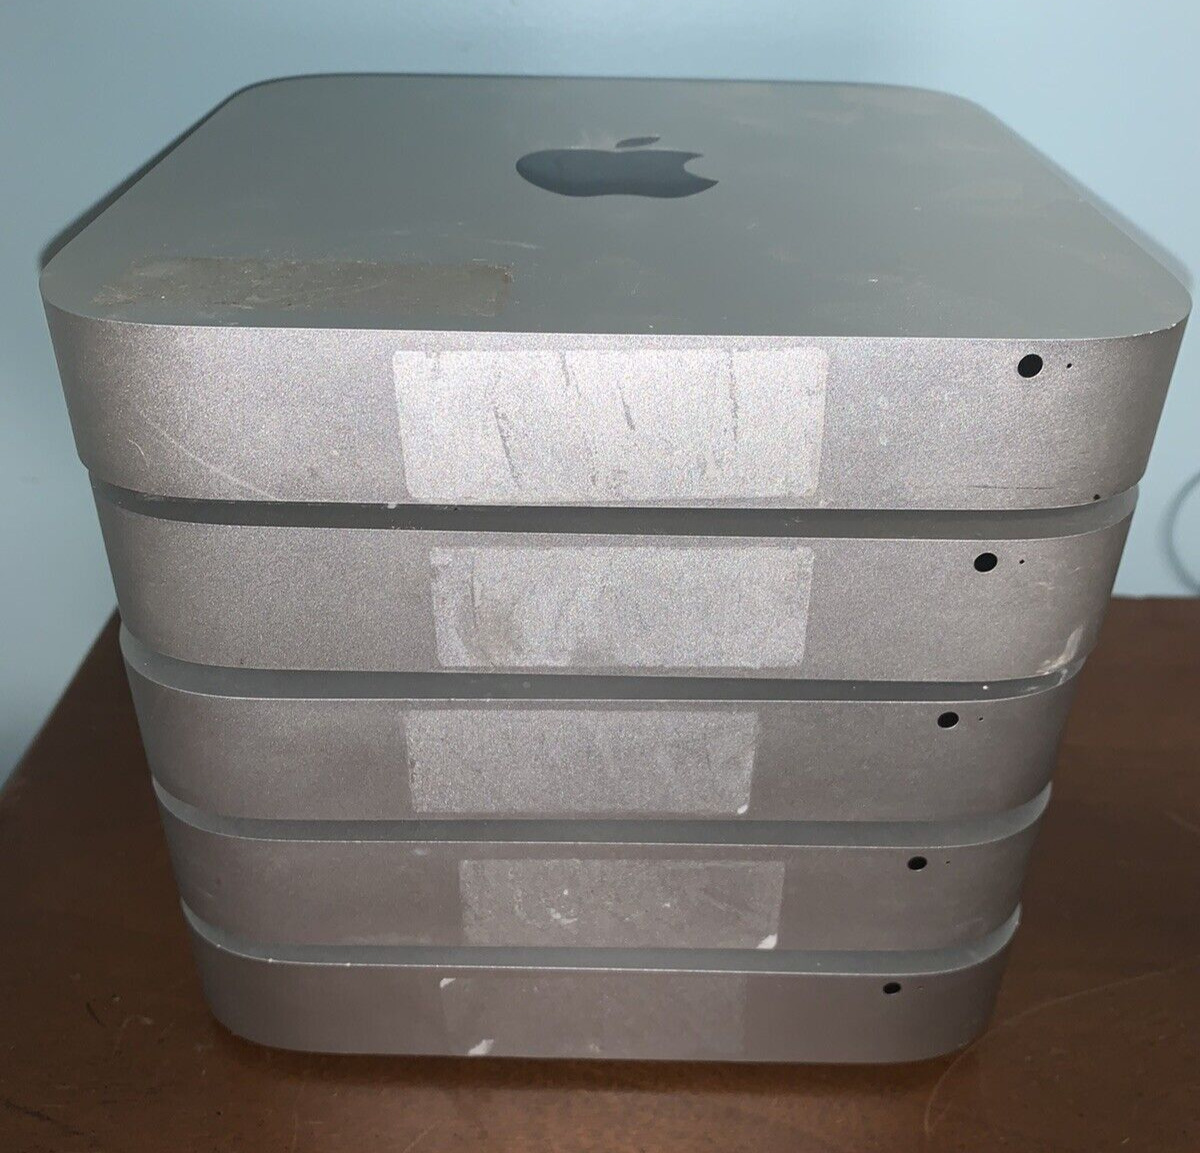 Lot: 5 Late 2014 Apple Mac Mini Desktop Intel Corei5  - ALL POWER ON PLEASE READ